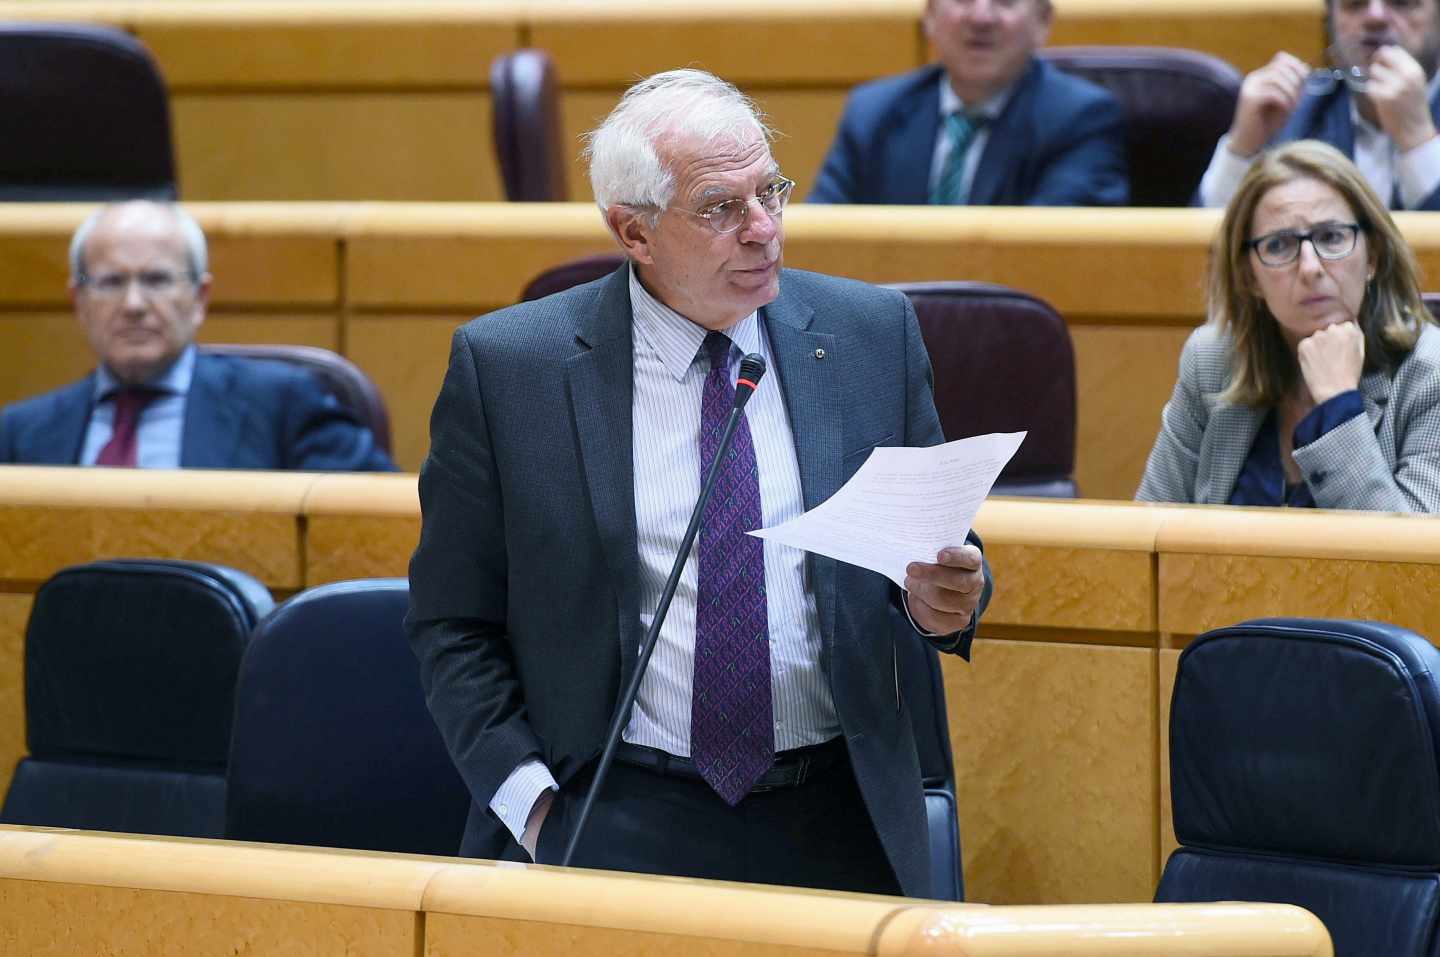 El PP y Cs 'salvan' a Borrell de ser reprobado en el Senado por los independentistas